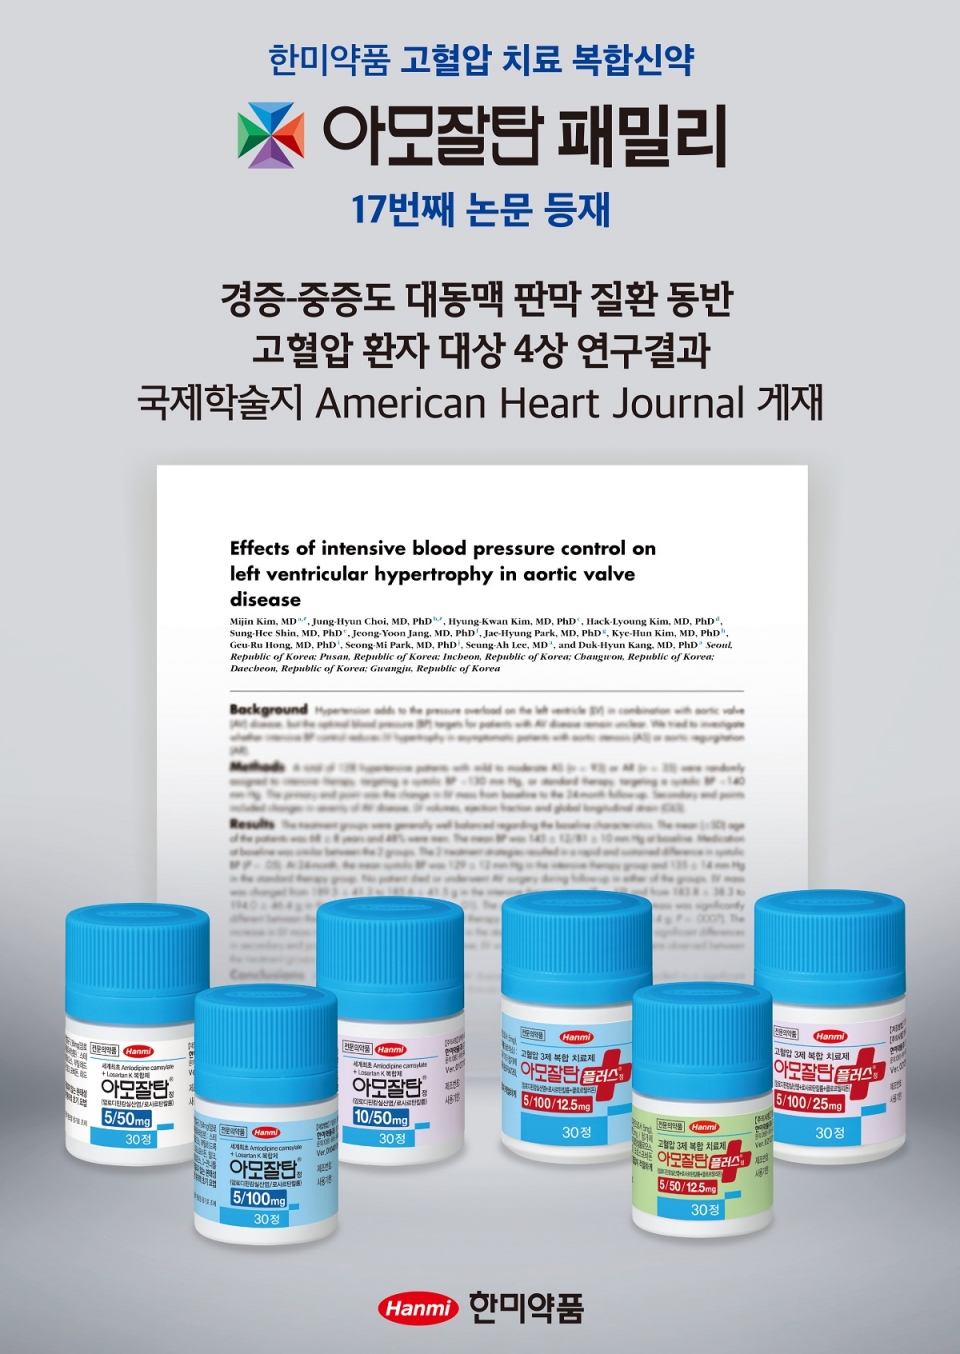 한미약품 ‘아모잘탄패밀리’의 임상 4상 연구 결과가 국제학술지 AHJ(American Heart Journal, IF : 4.8)에 최근 등재됐다. 아모잘탄패밀리 17번째 논문 등재이다.